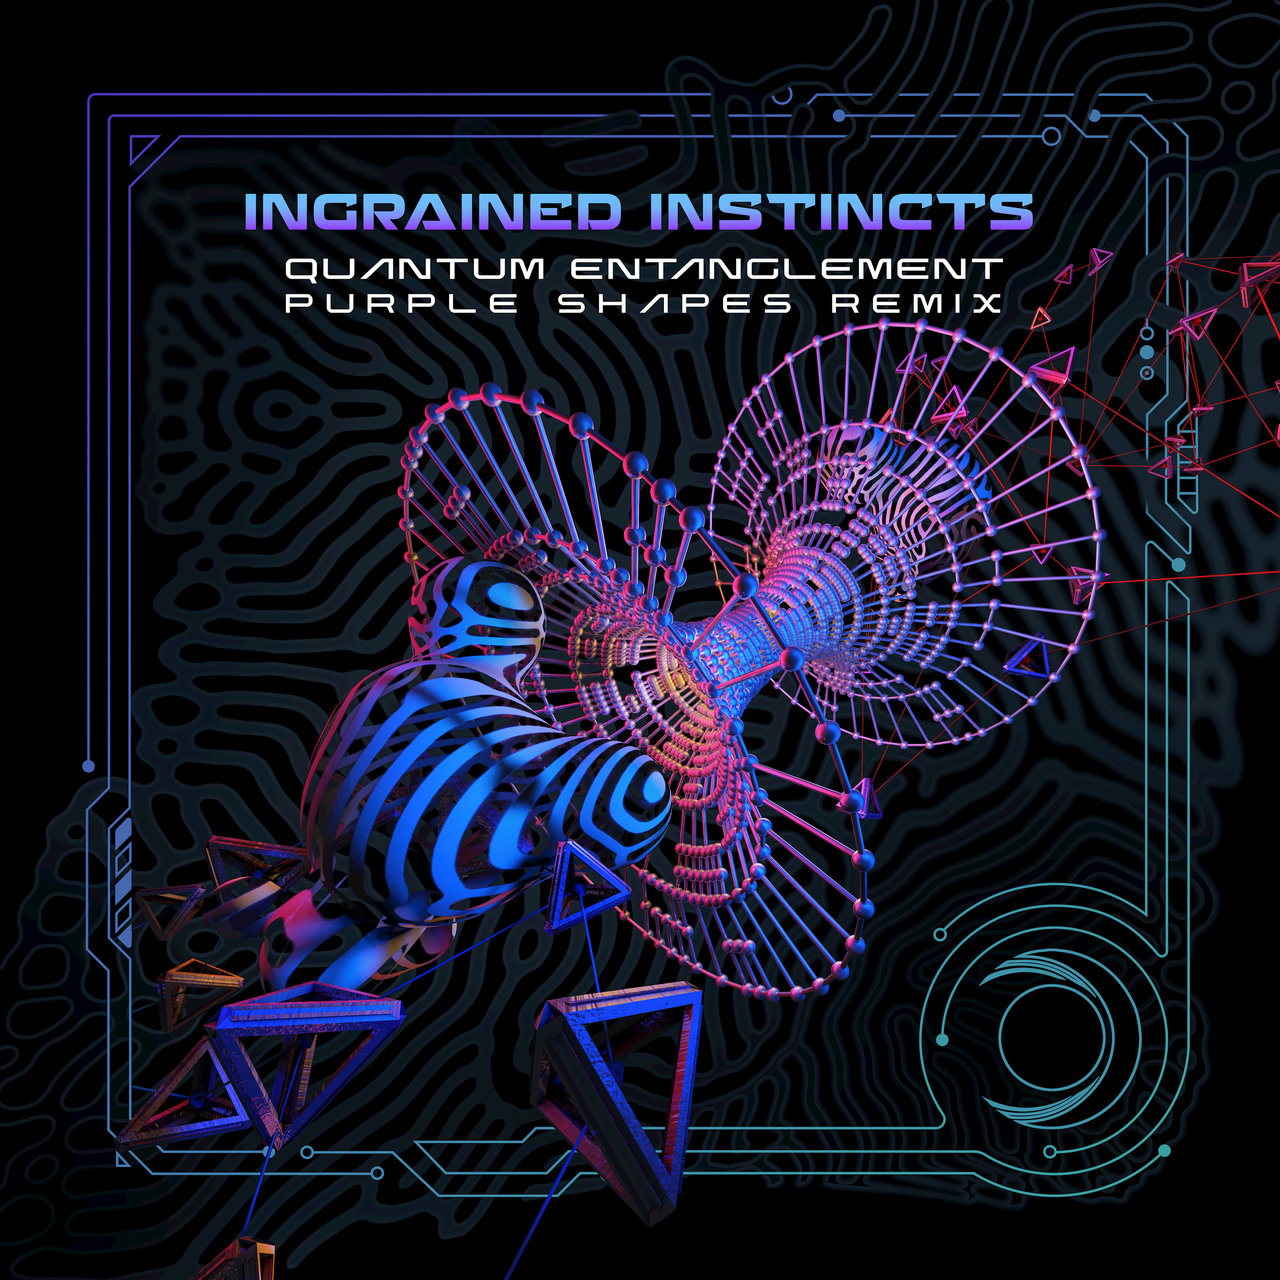 Quantum Entanglement (Purple Shapes Remix) - Ingrained Instincts